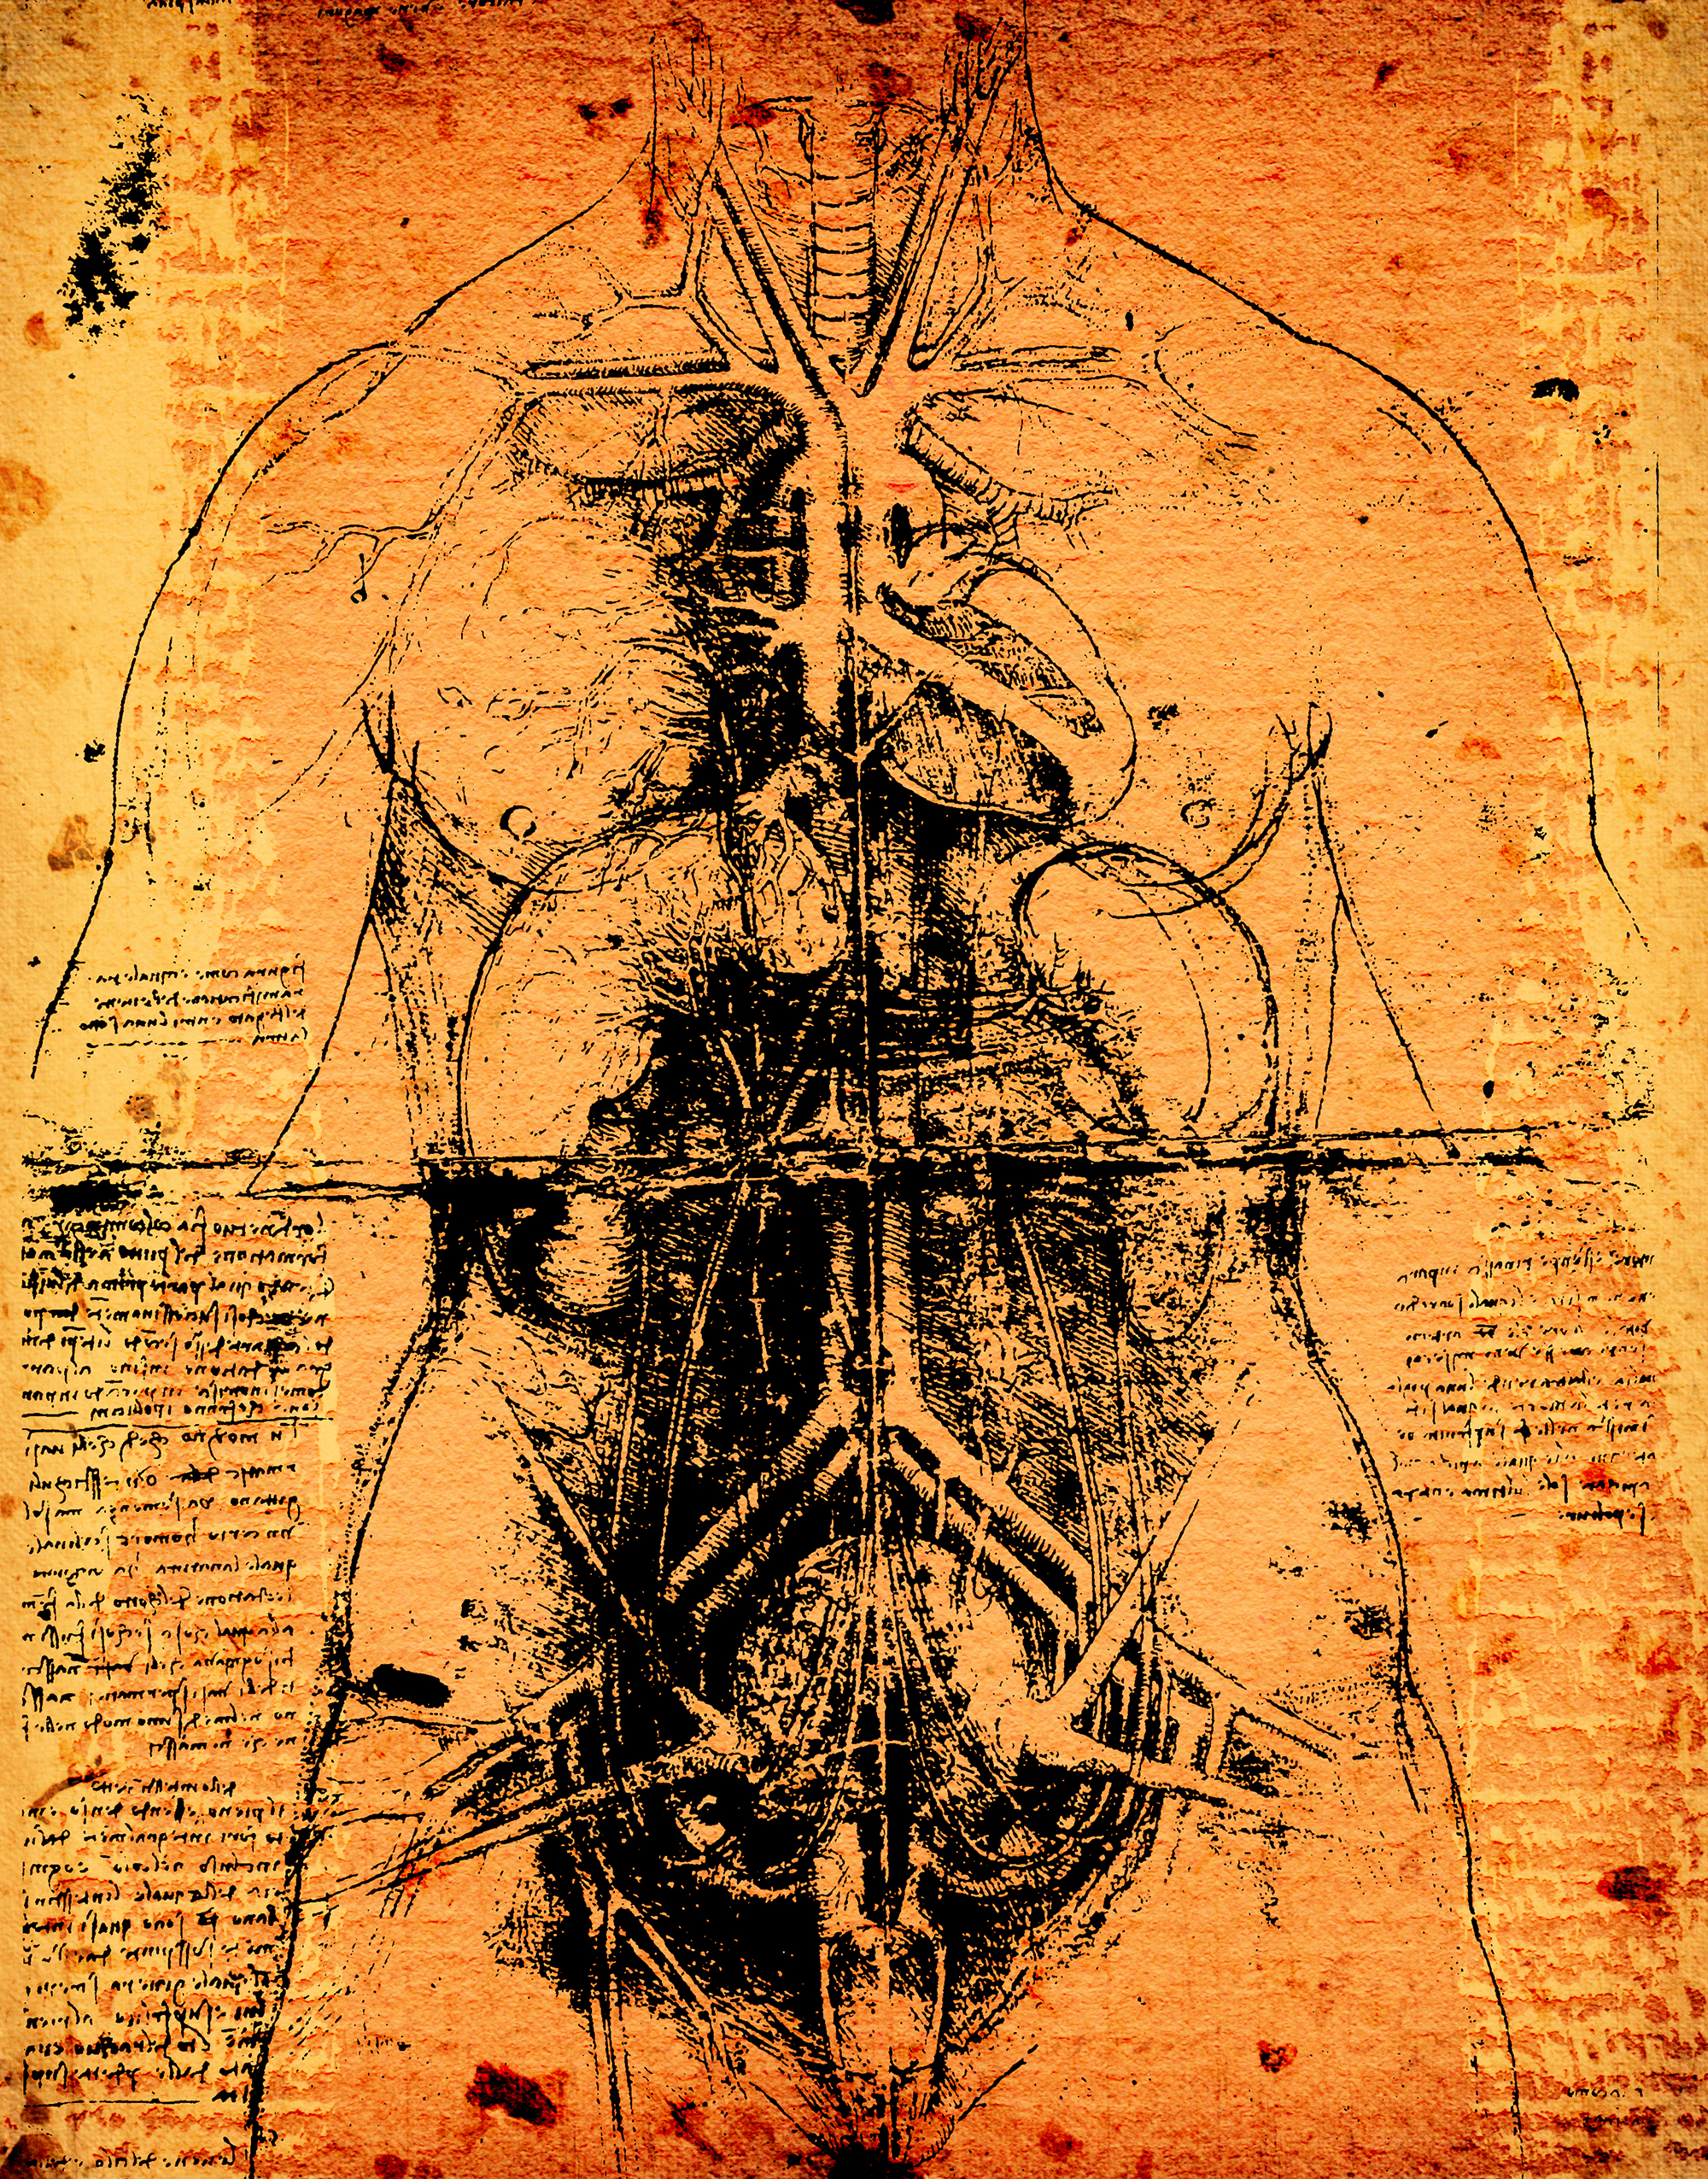 Da Vinci a fait progresser la connaissance de l'anatomie.